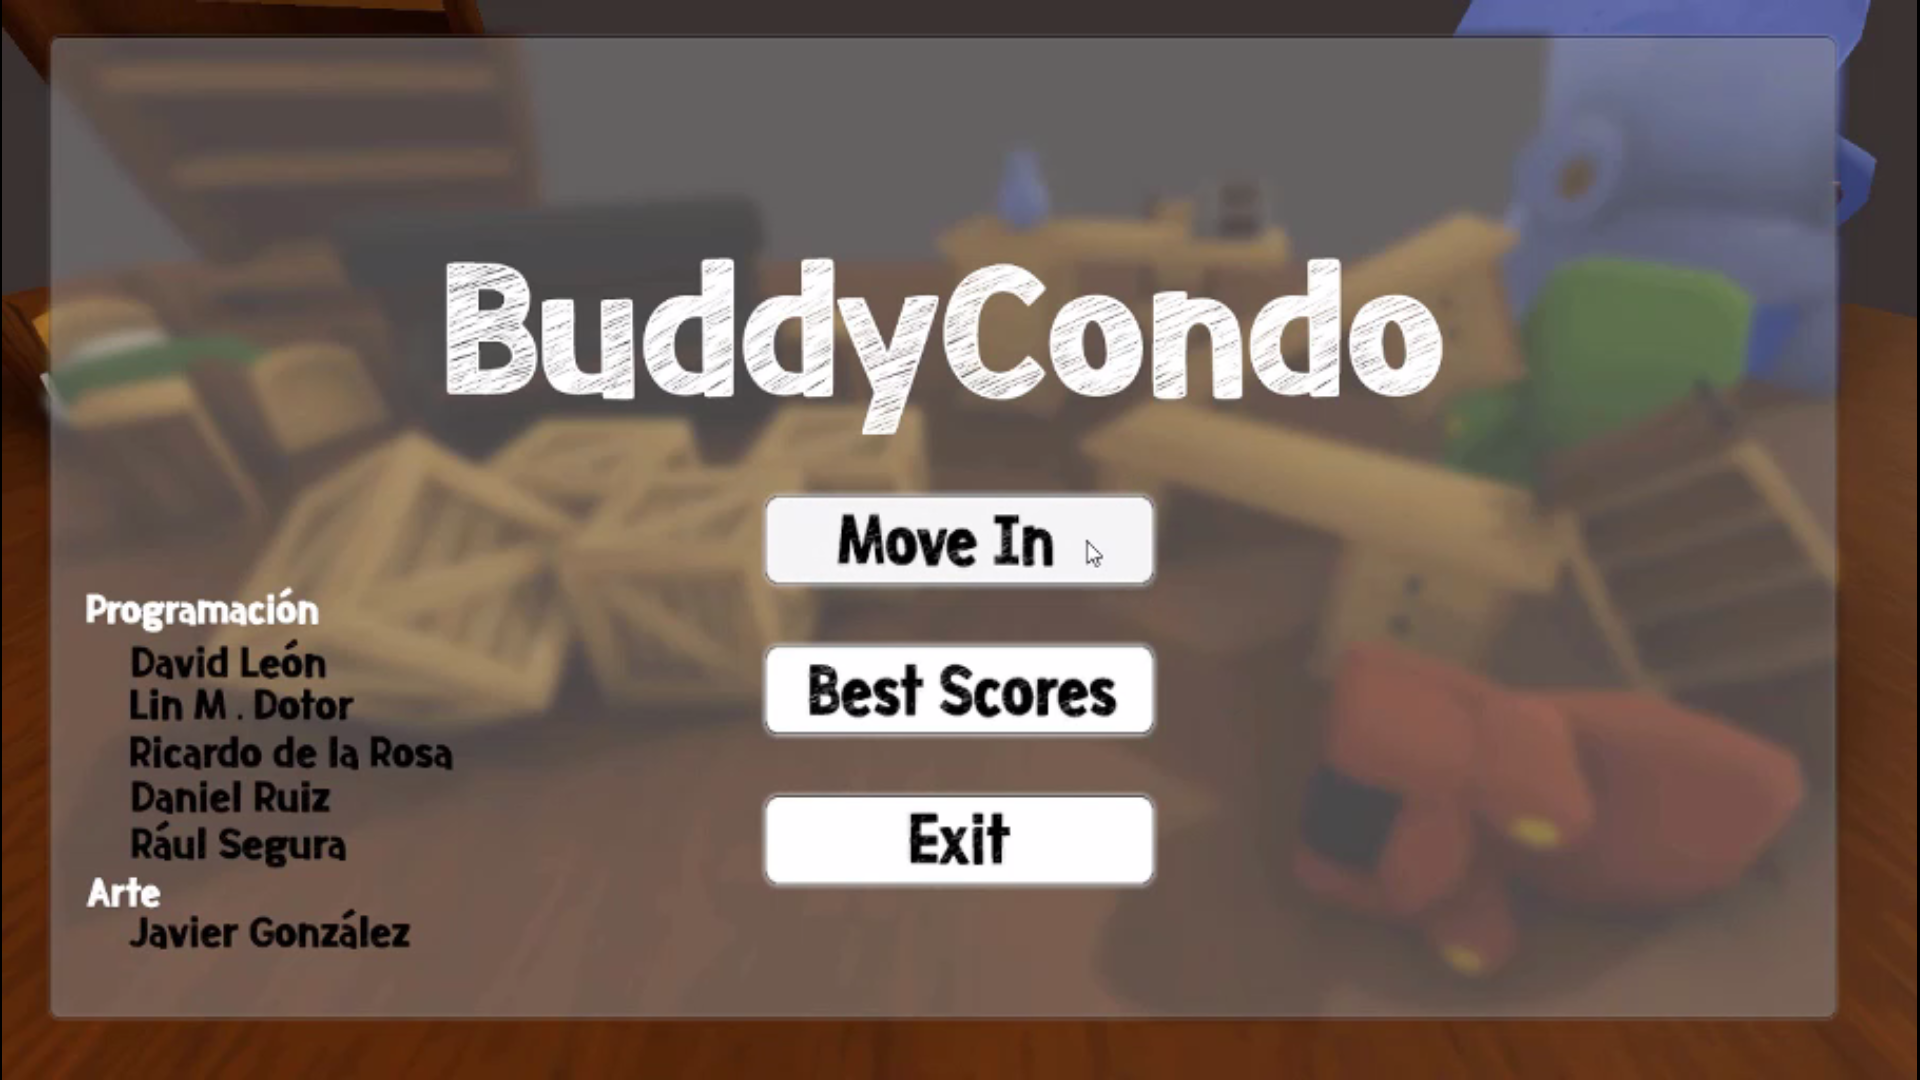 Buddy Condo